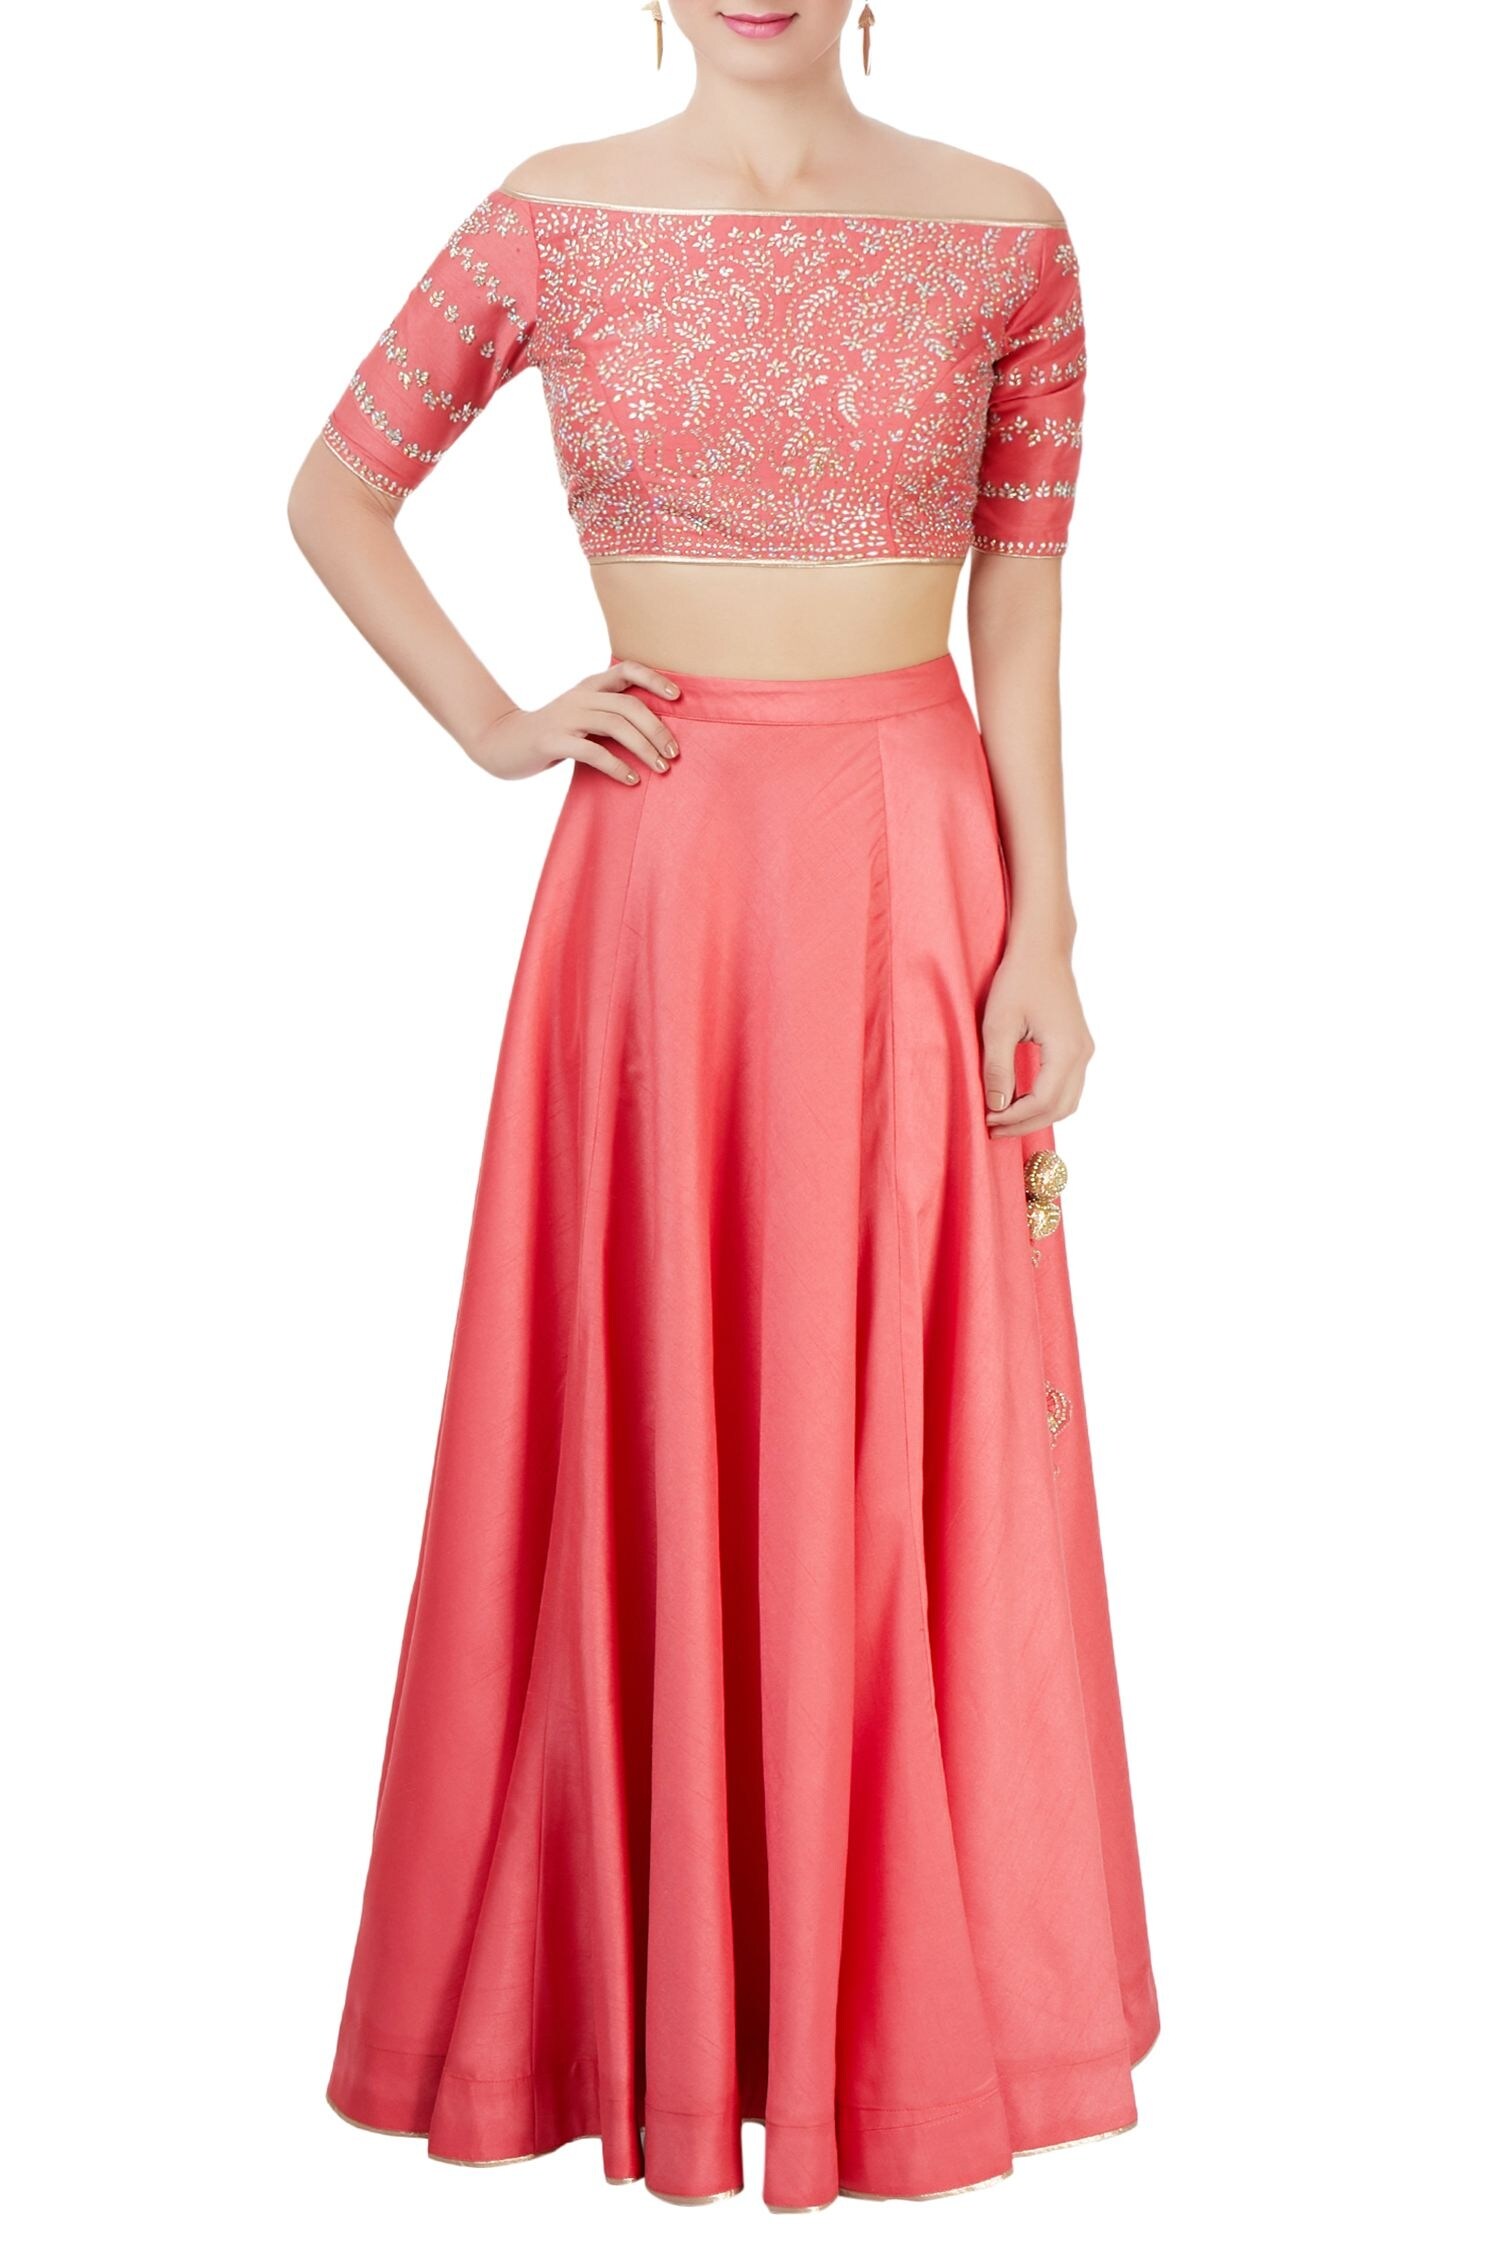 Buy Coral pink lehenga set by Vandana Sethi at Aza Fashions